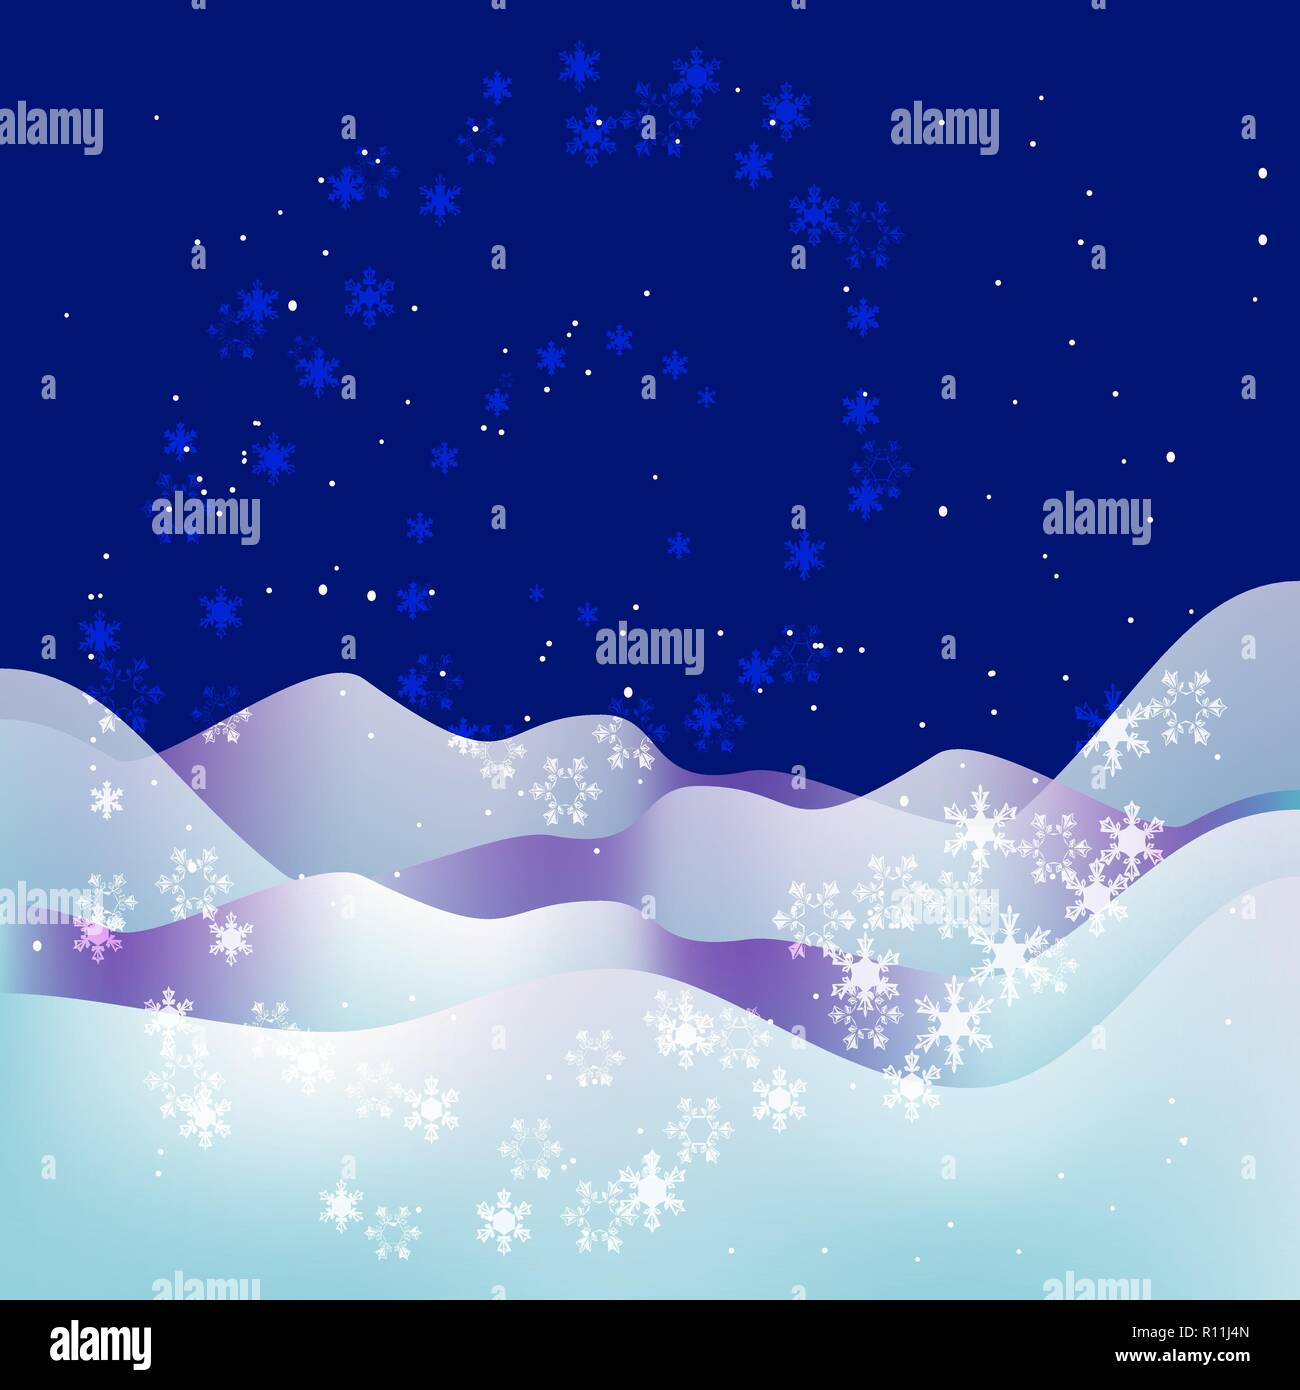 Alla moda di Natale e Anno Nuovo sfondo blu. La notte di Natale. Neve, fiocchi di neve, stelle e cumuli di neve. Abstract Natale sfondo con paesaggio invernale Illustrazione Vettoriale